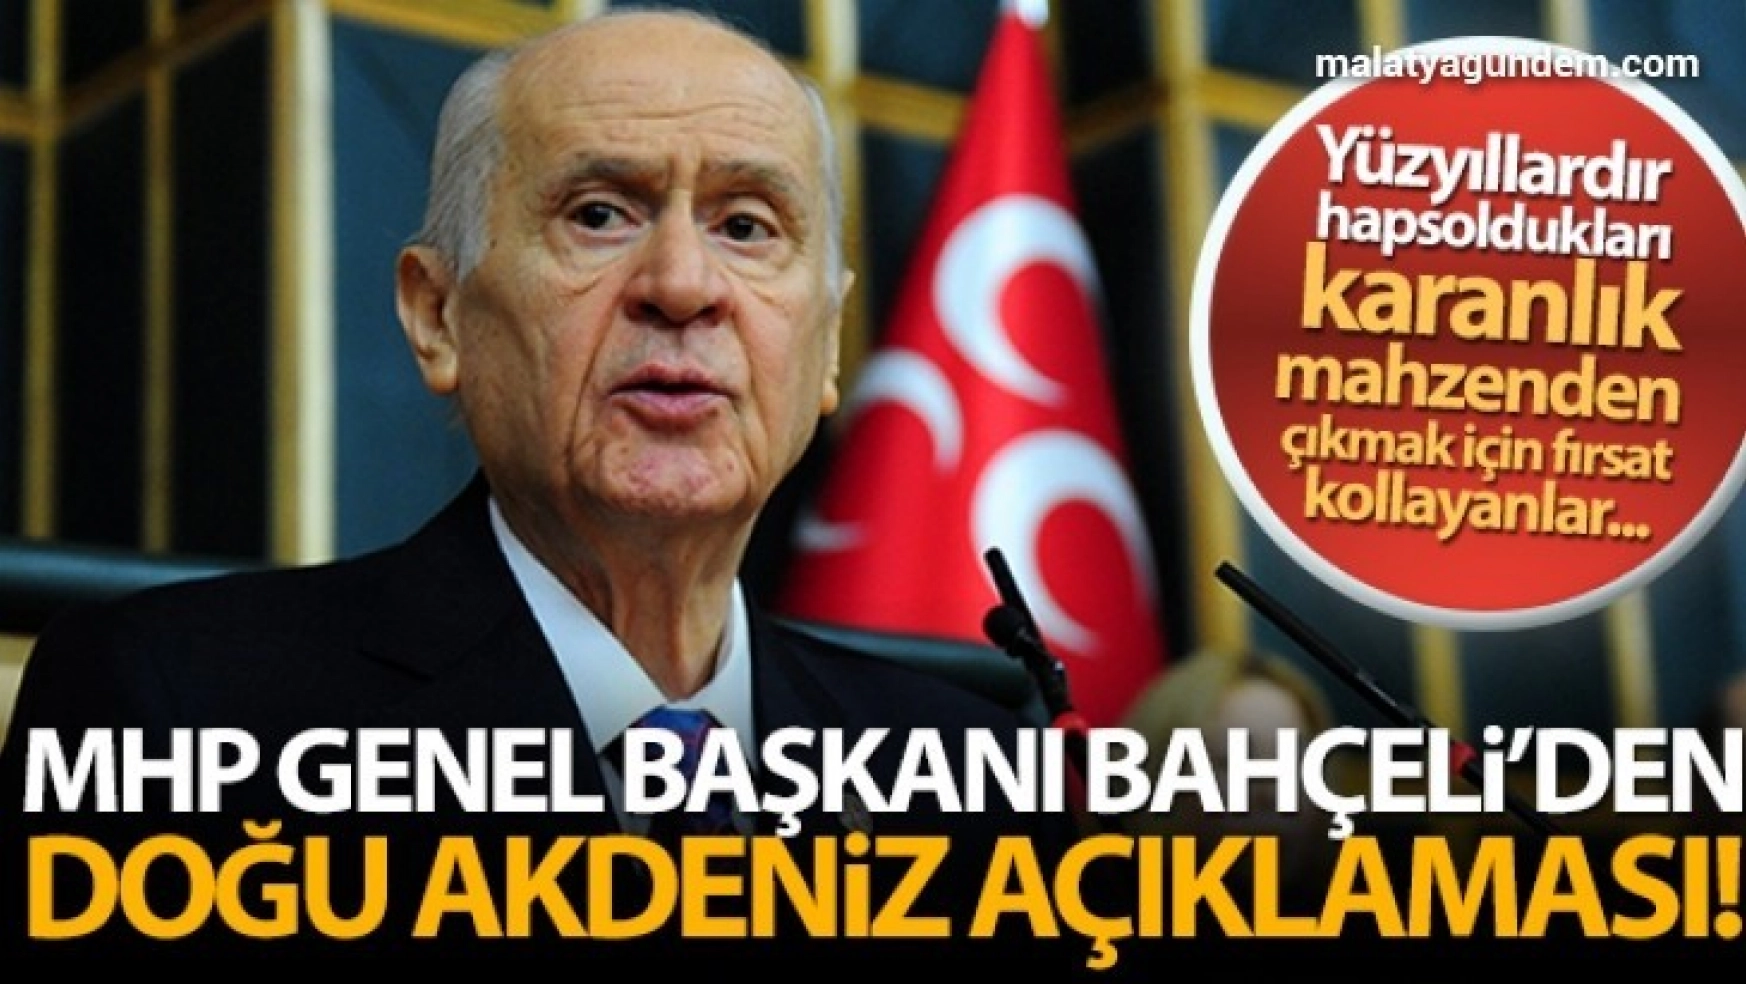 MHP Genel Başkanı Bahçeli'den 'Doğu Akdeniz' açıklaması!